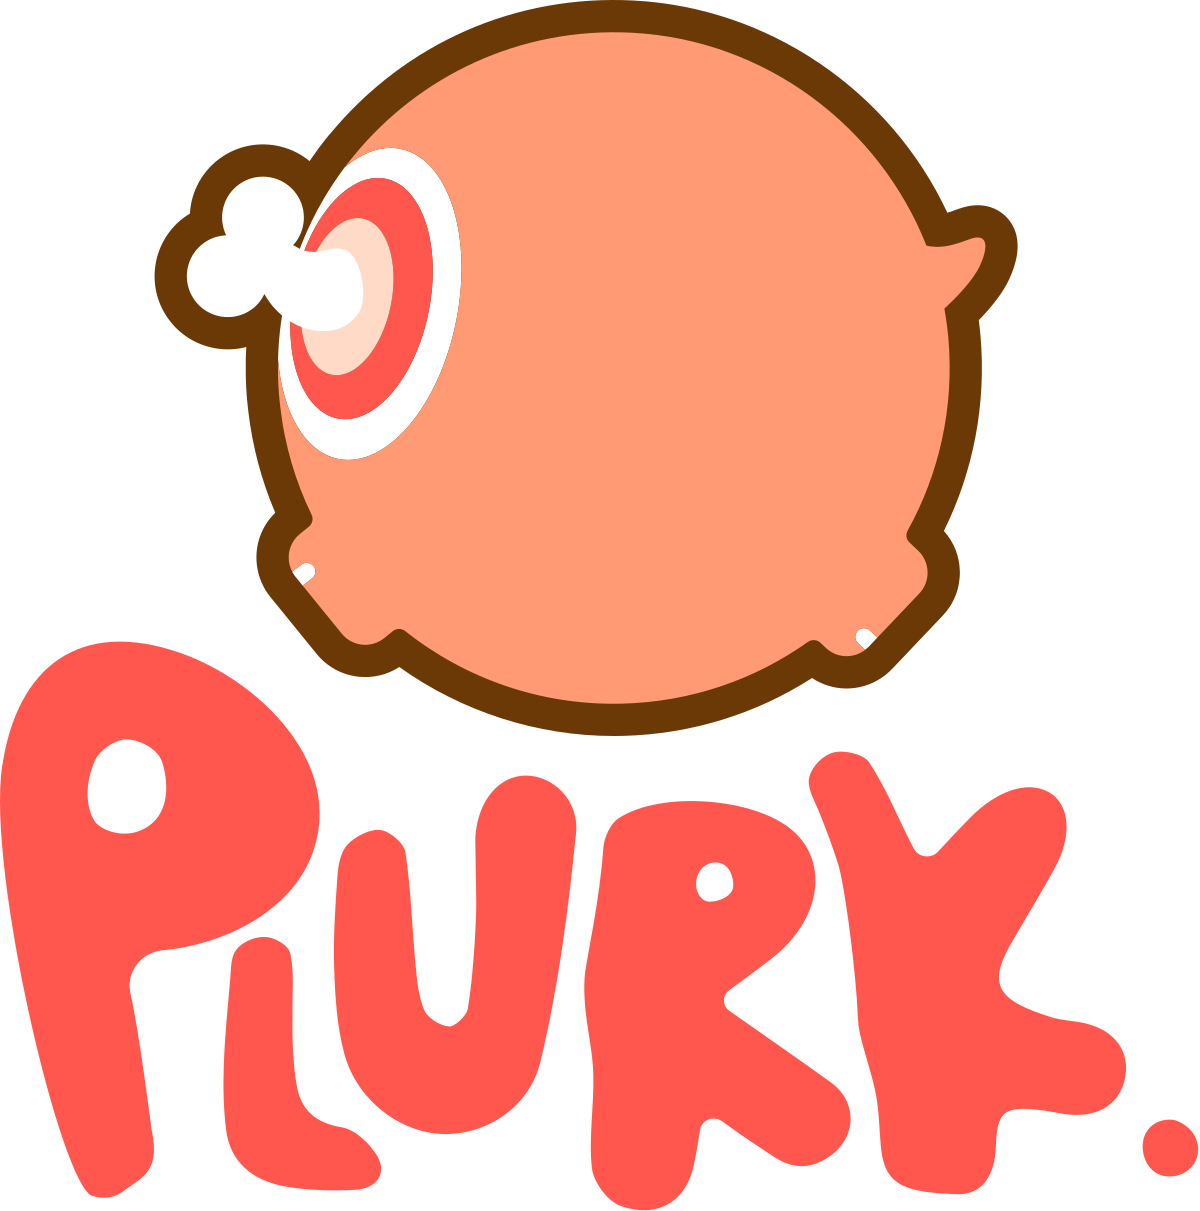 Plurk - Plurk Definition Clipart (1200x1211), Png Download